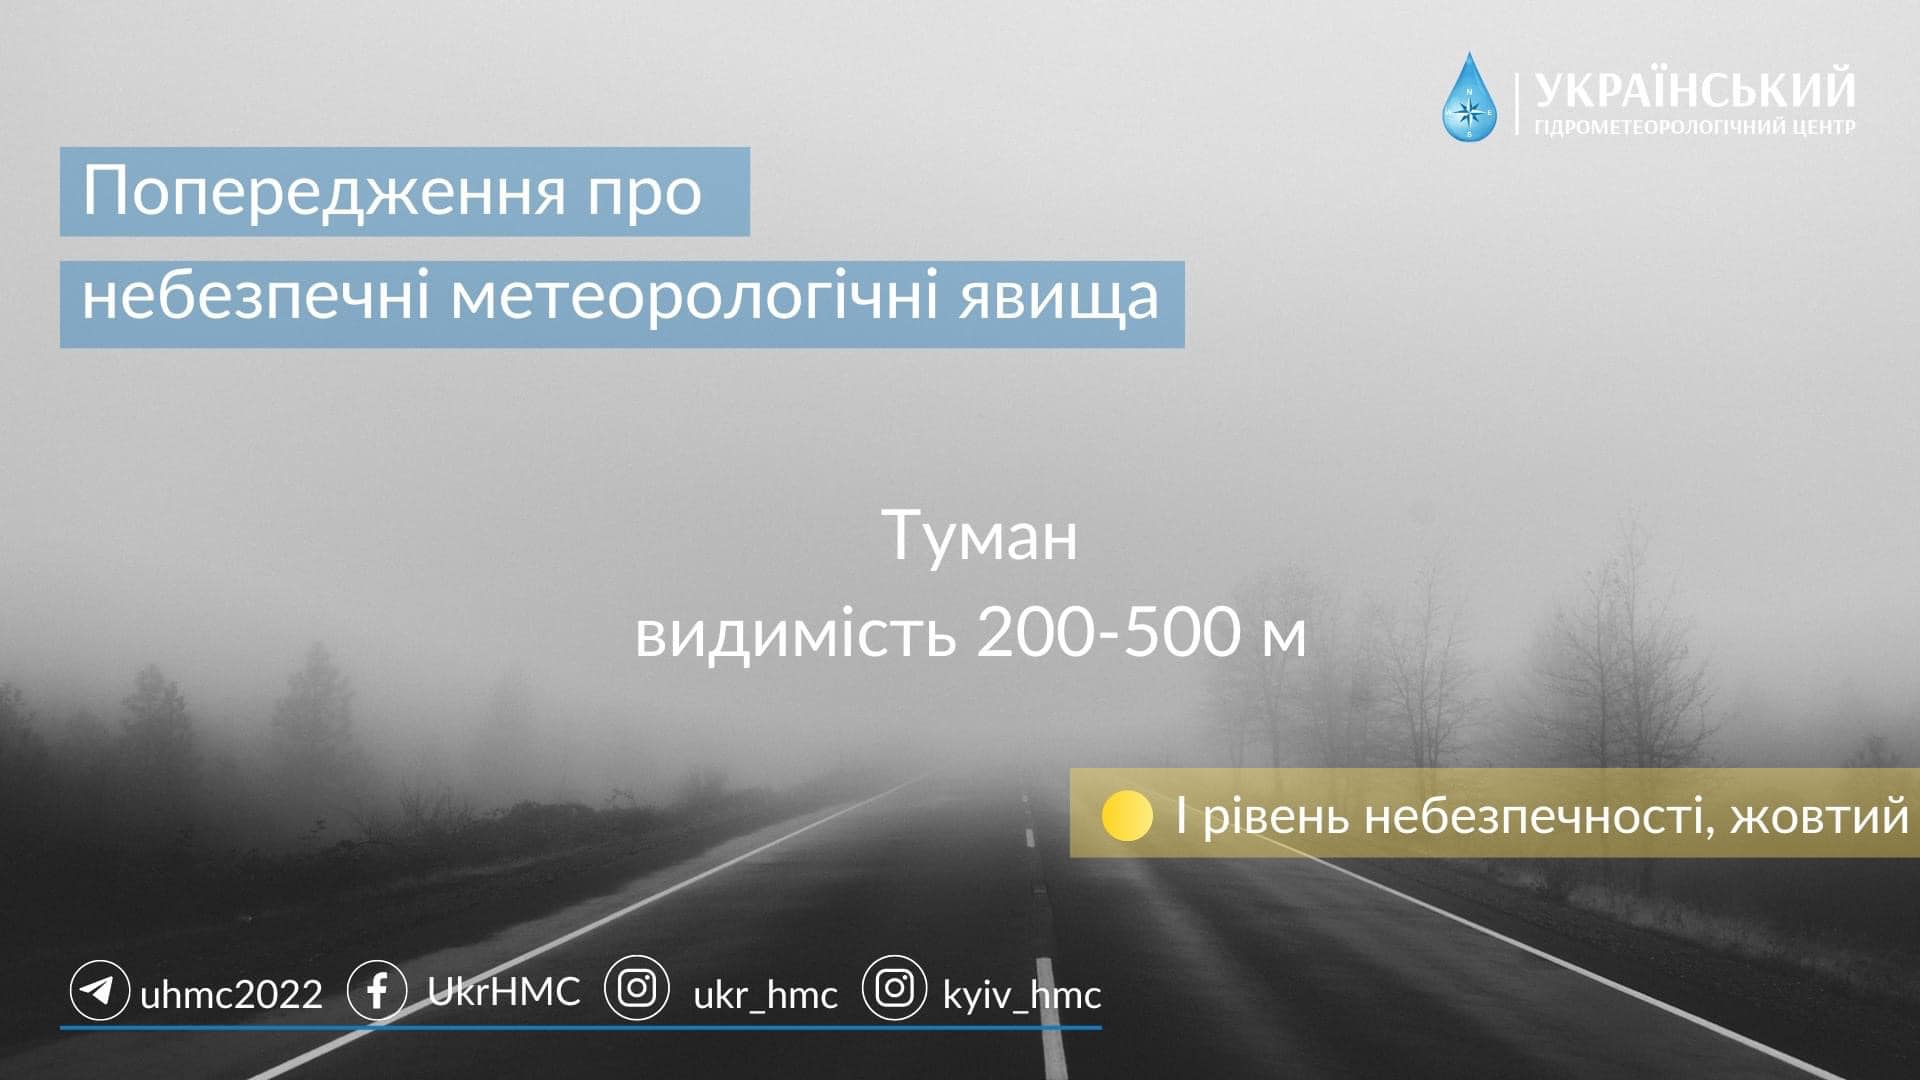 Харківщину знову накриє туман. Укргідрометцентр попереджає про небезпеку